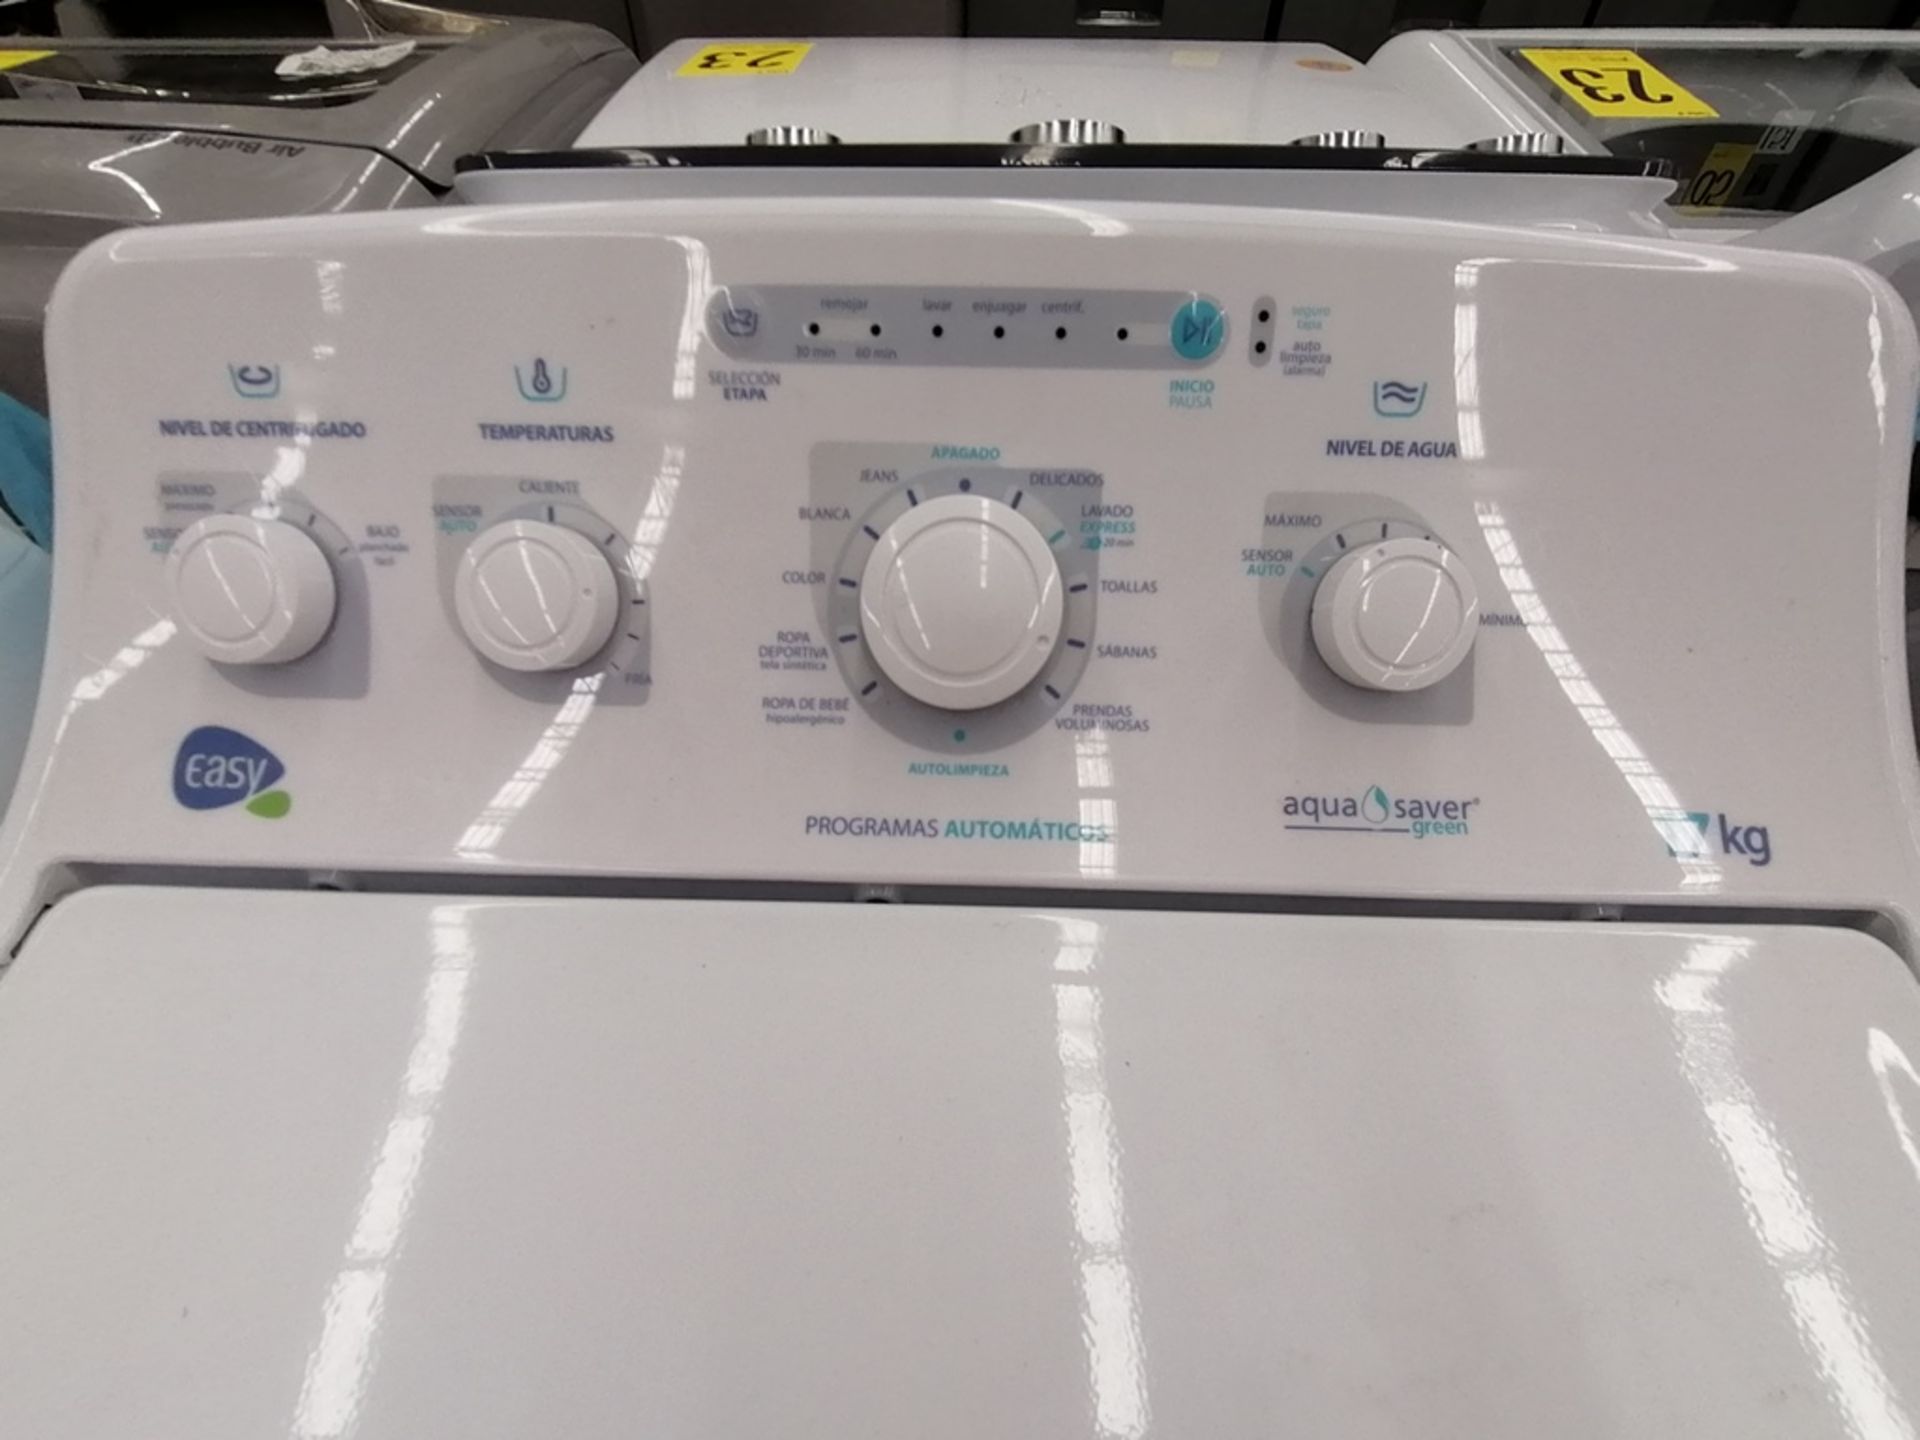 Lote de 3 lavadoras contiene: 1 Lavadora de 17KG, Marca Easy, Modelo LEA77114CBAB03, Serie 2105S552 - Image 27 of 30